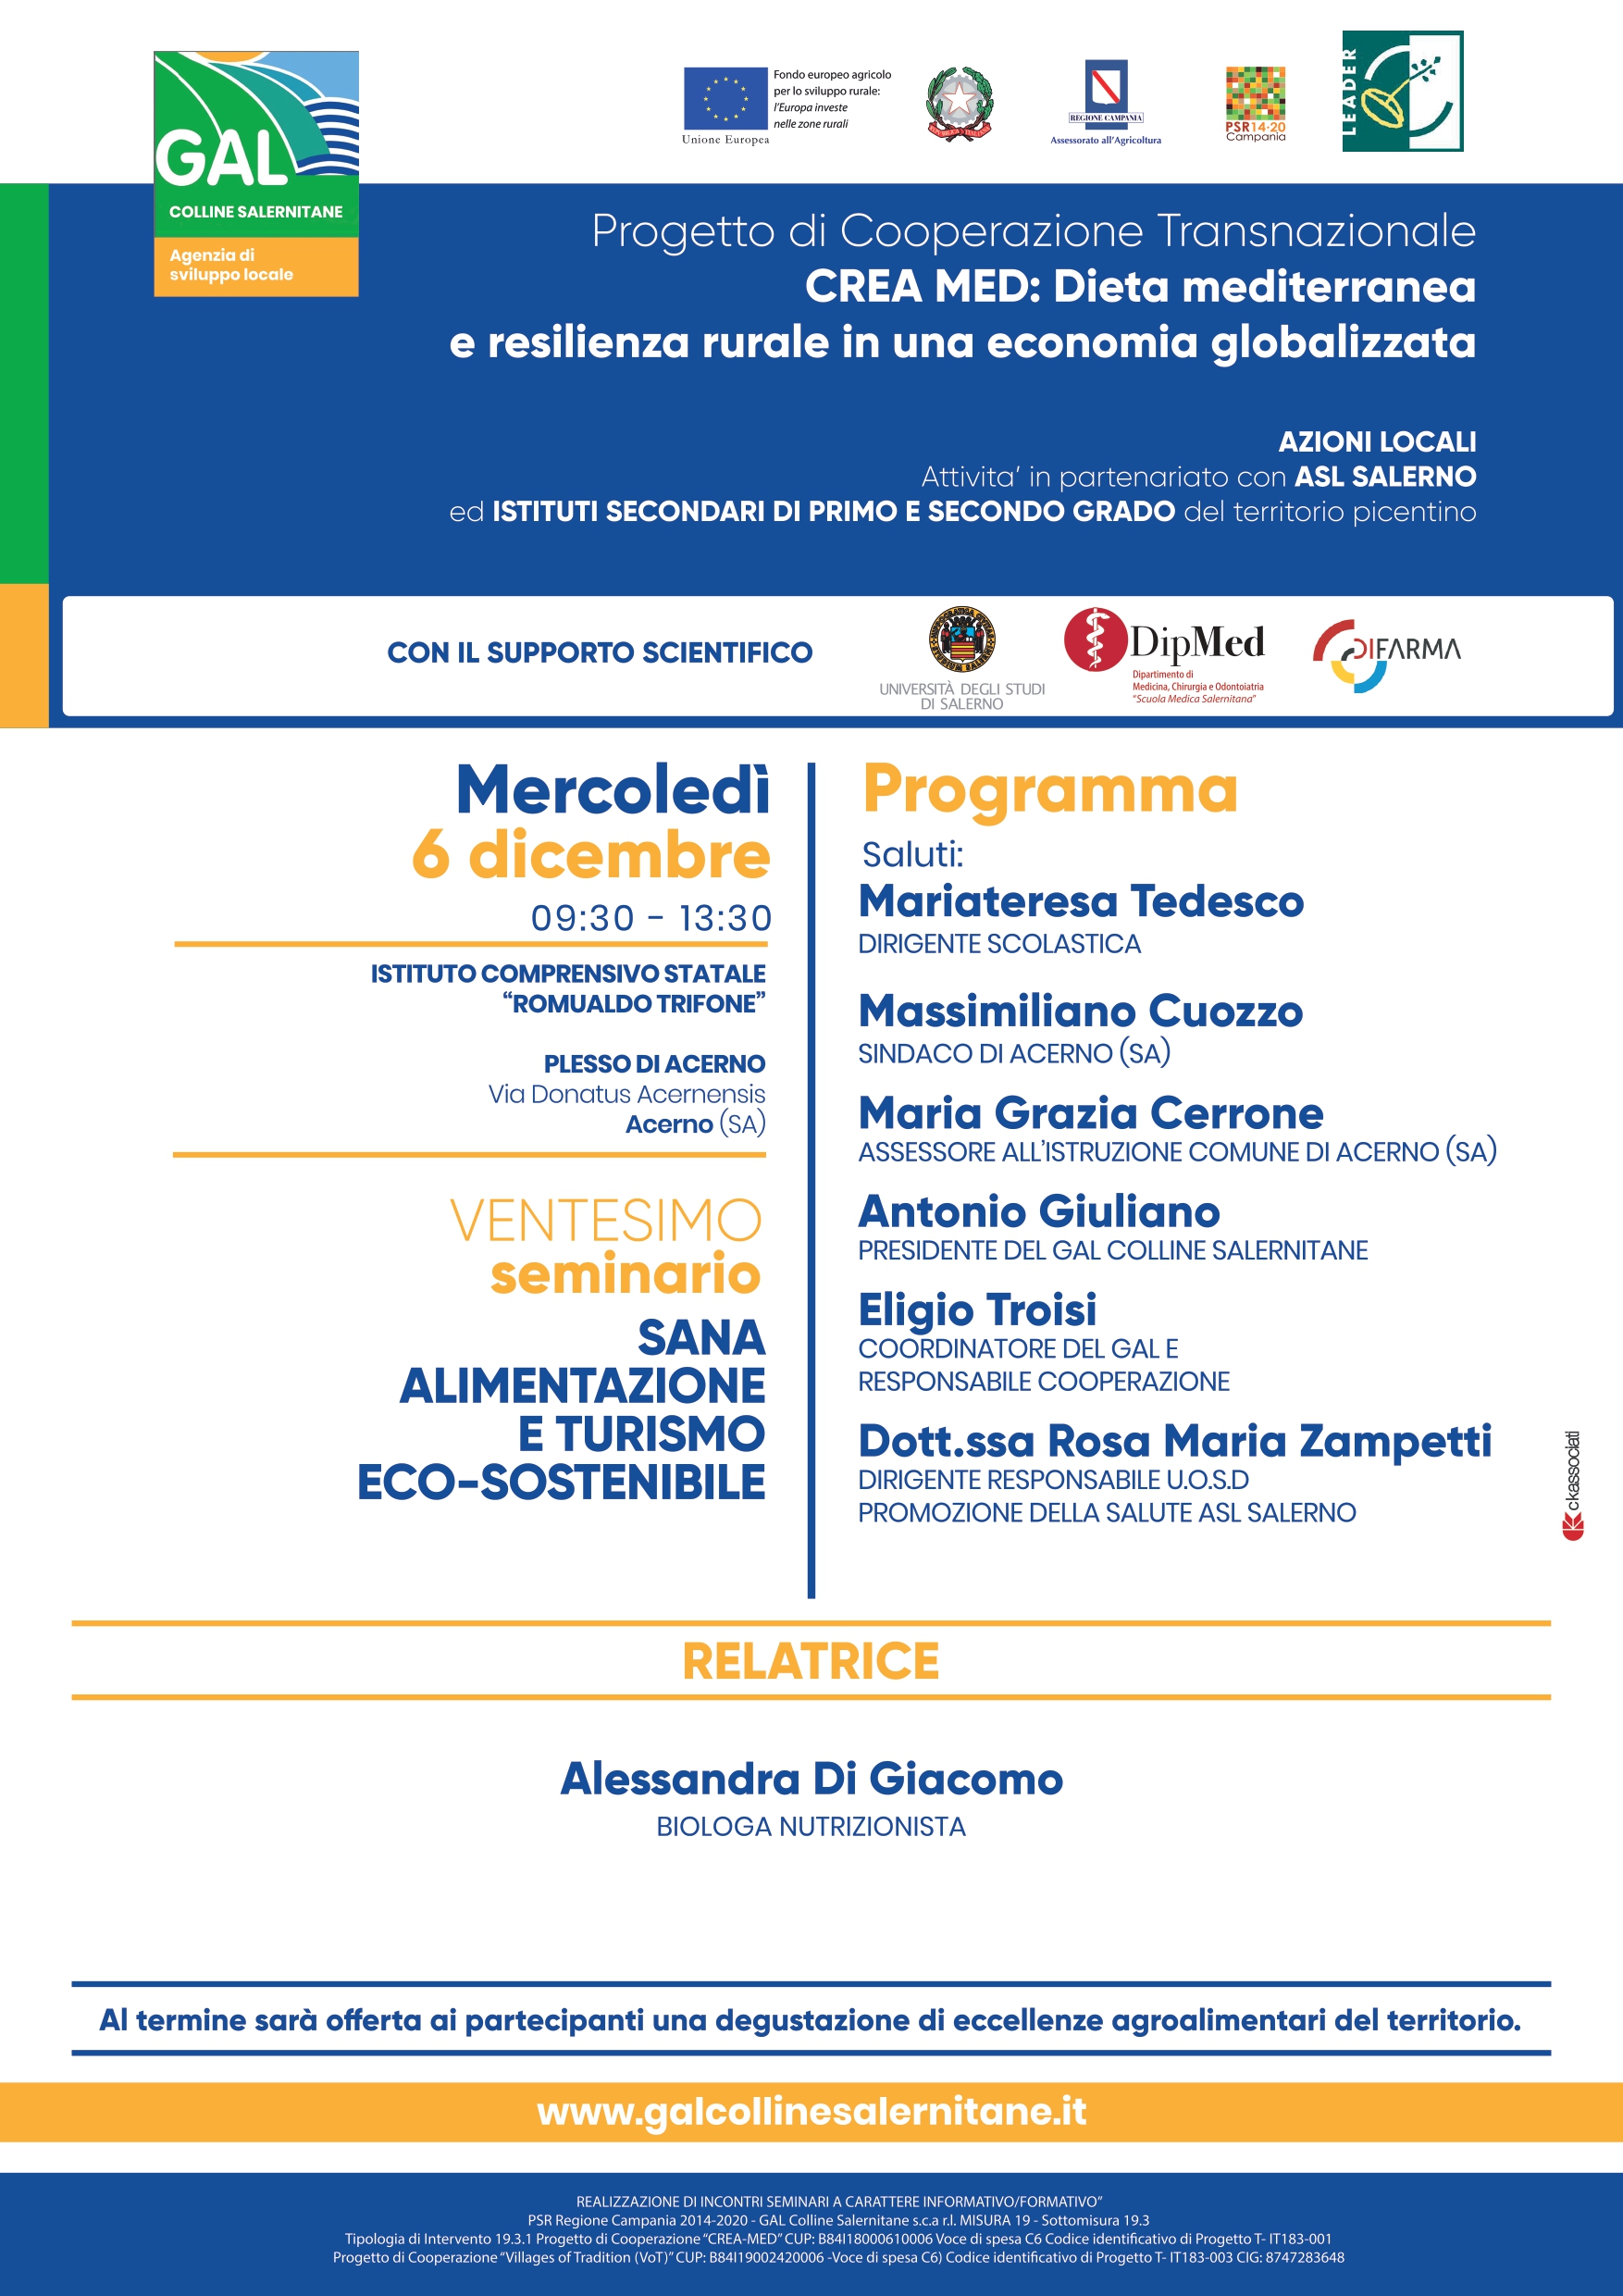 Giffoni Valle Piana: GAL, seminario su Dieta Mediterranea all’IC “Romualdo Trifone” plesso di Acerno 